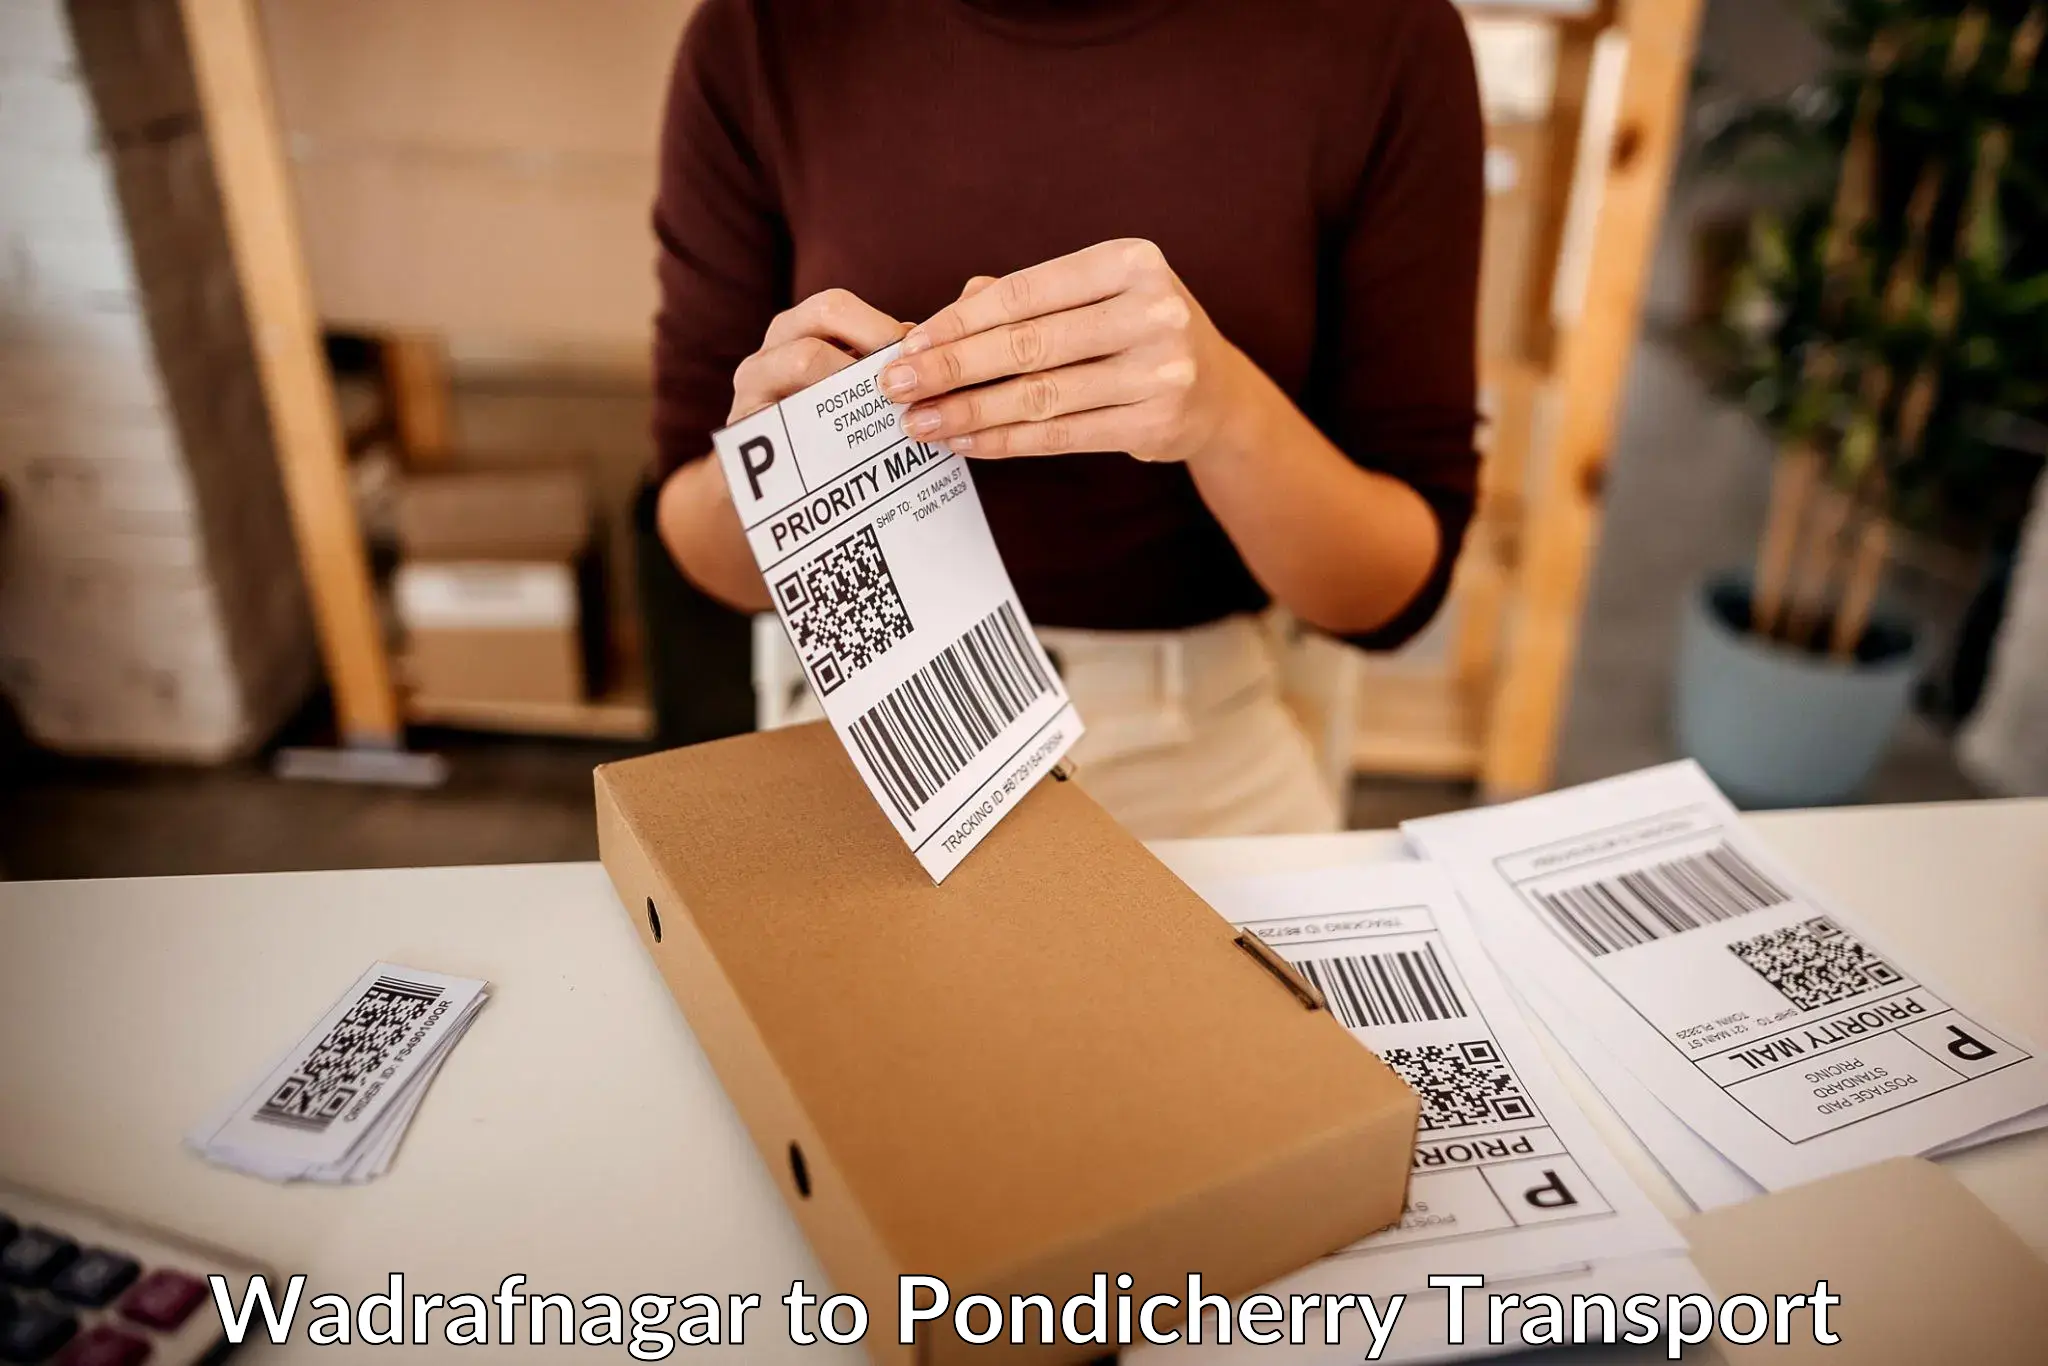 Delivery service Wadrafnagar to Pondicherry